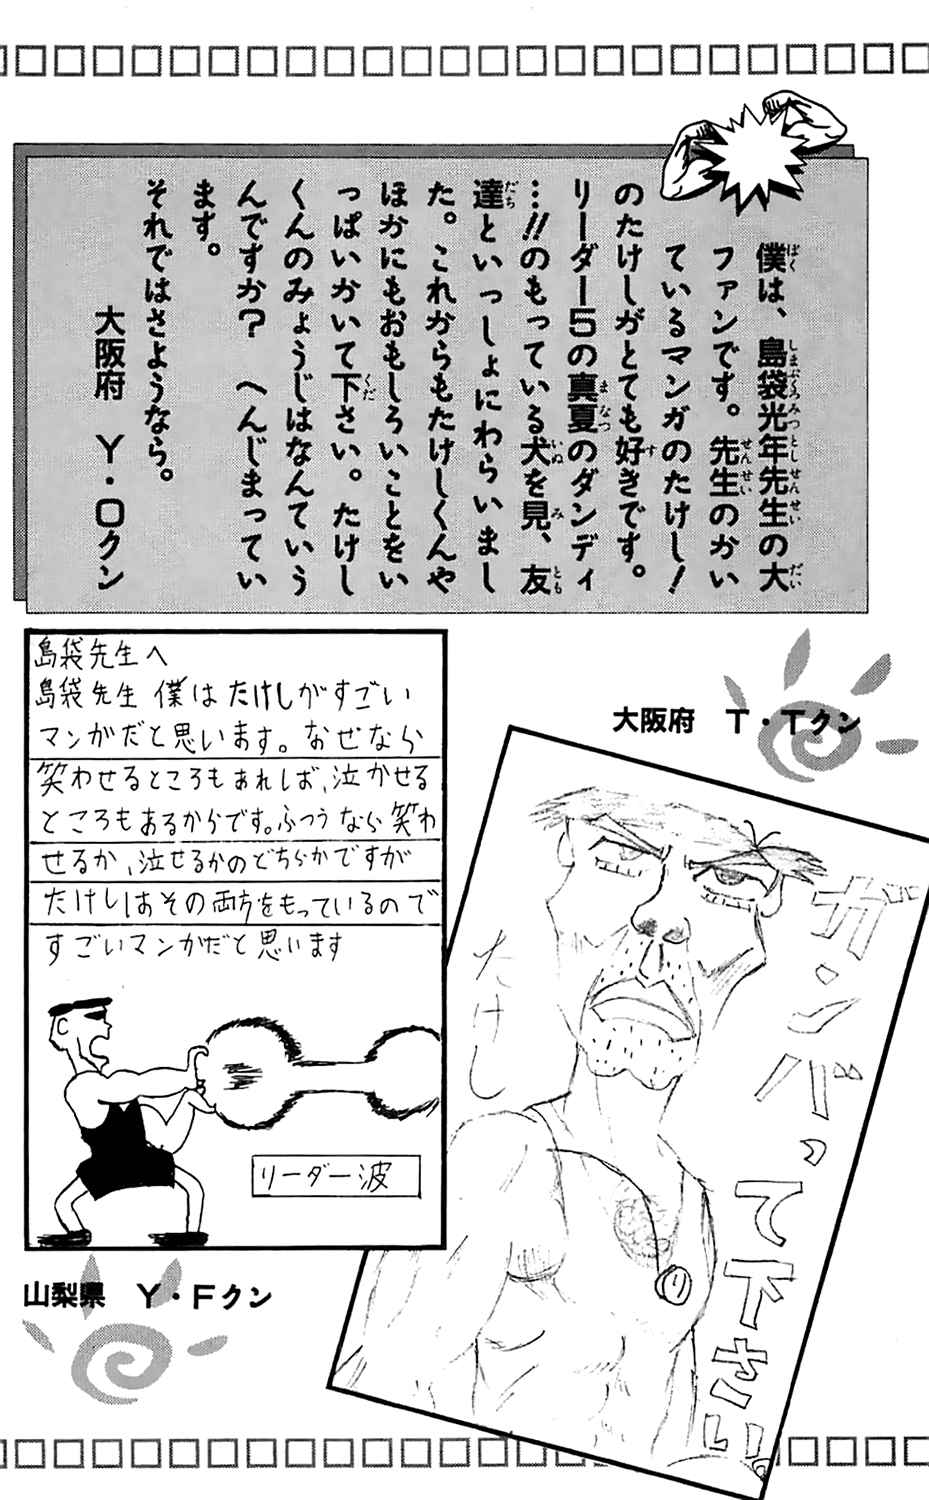 Seikimatsu Leader Den Takeshi! Vol.1 Ch.17